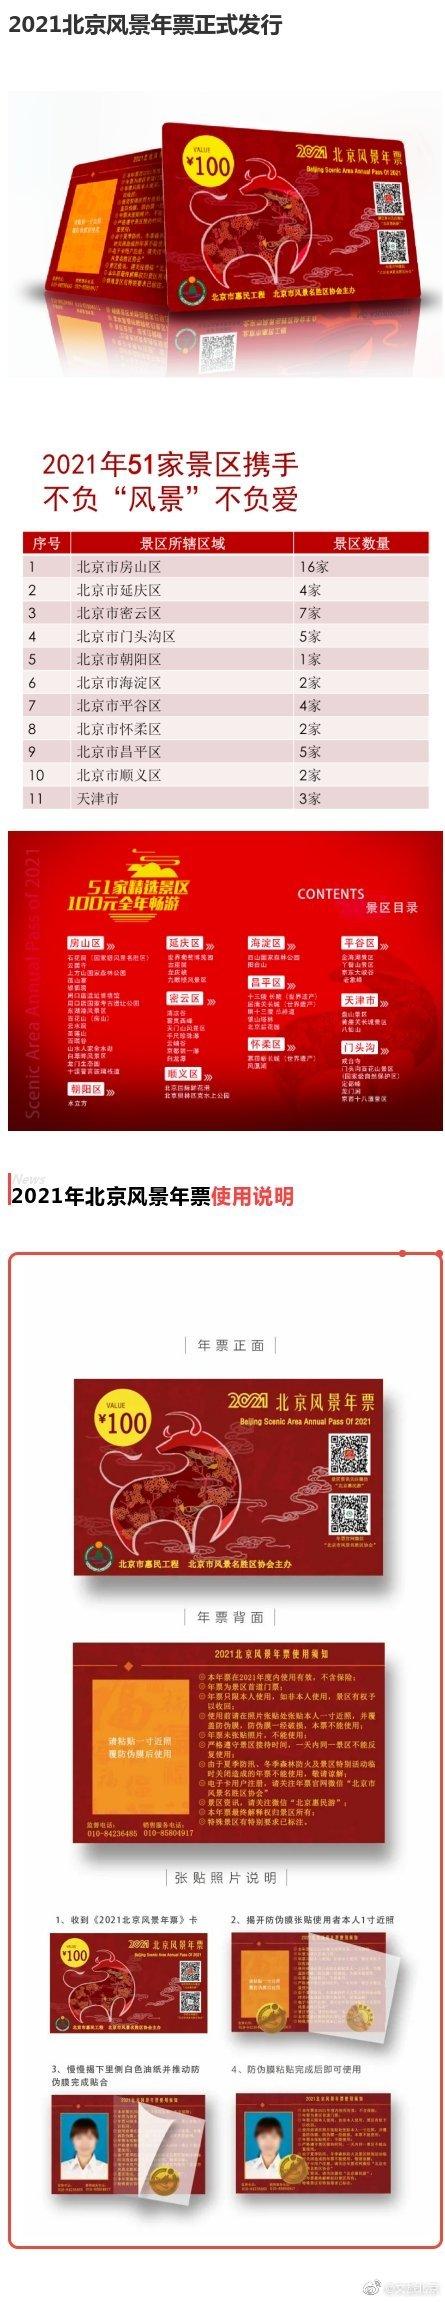 2021北京风景年票正式发行